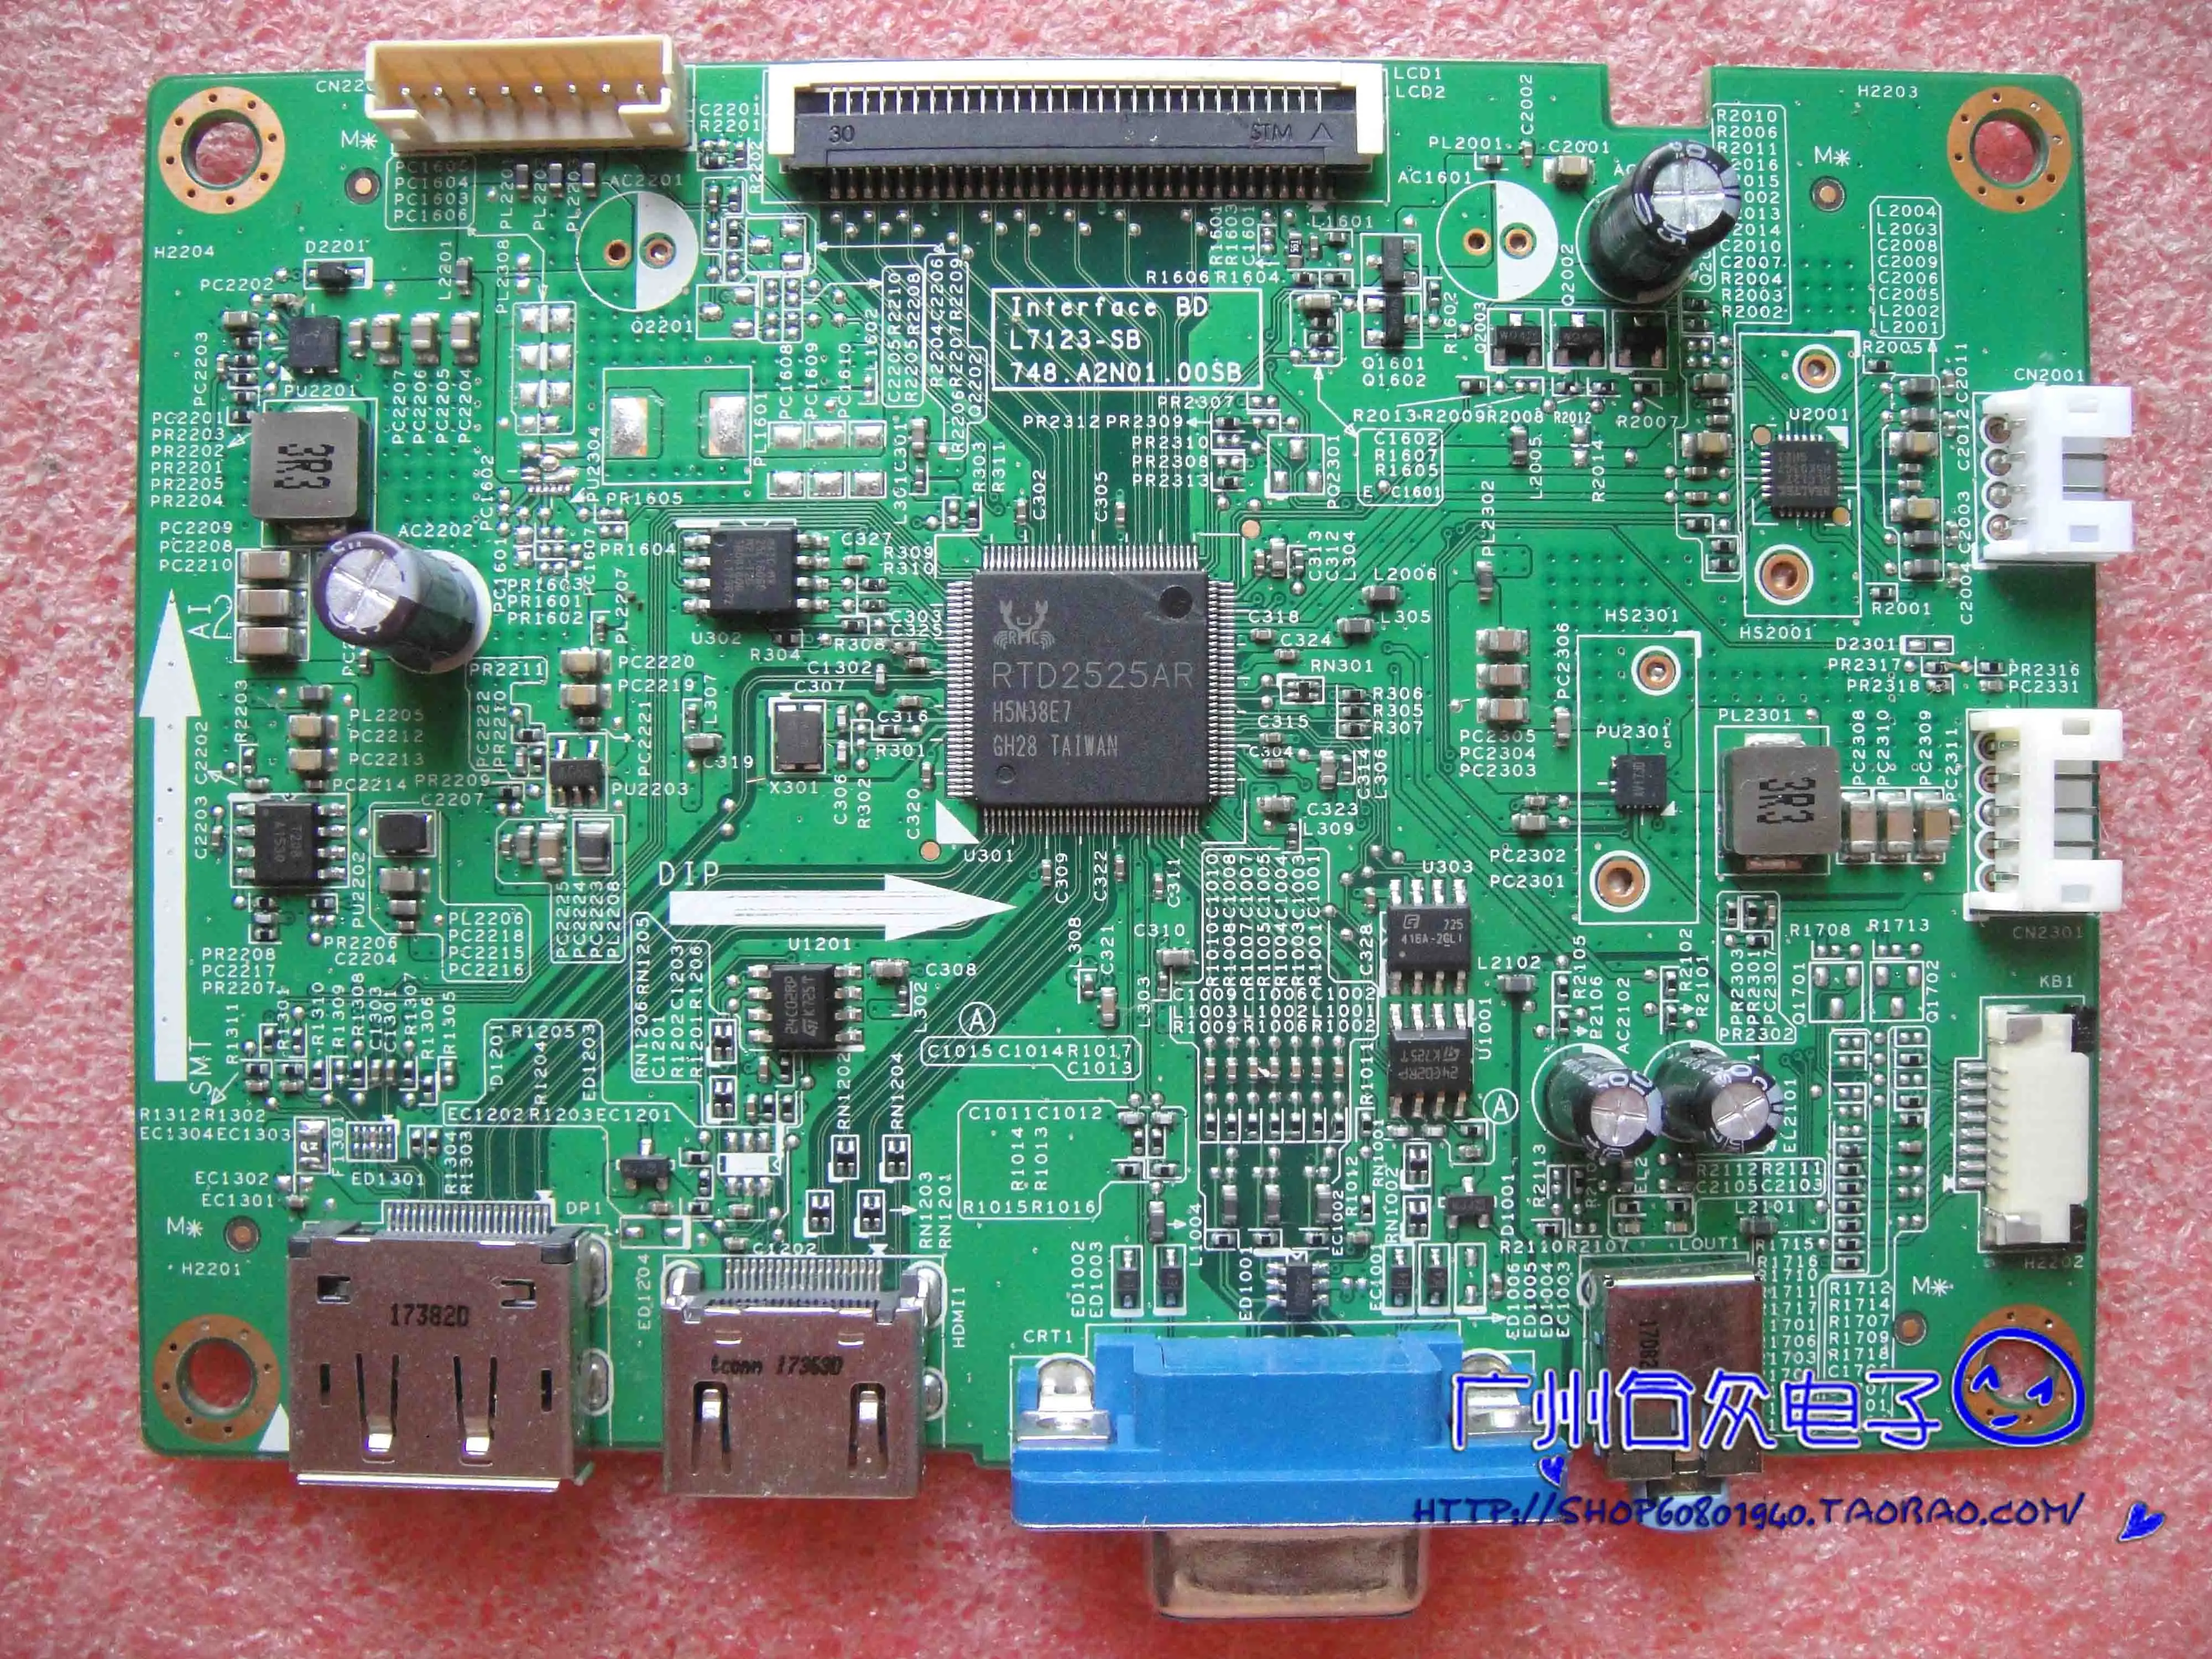 

L7123-SB 748.A2N01.00SB driven motherboard screen LTM240CL08 L7123-SB motherboard